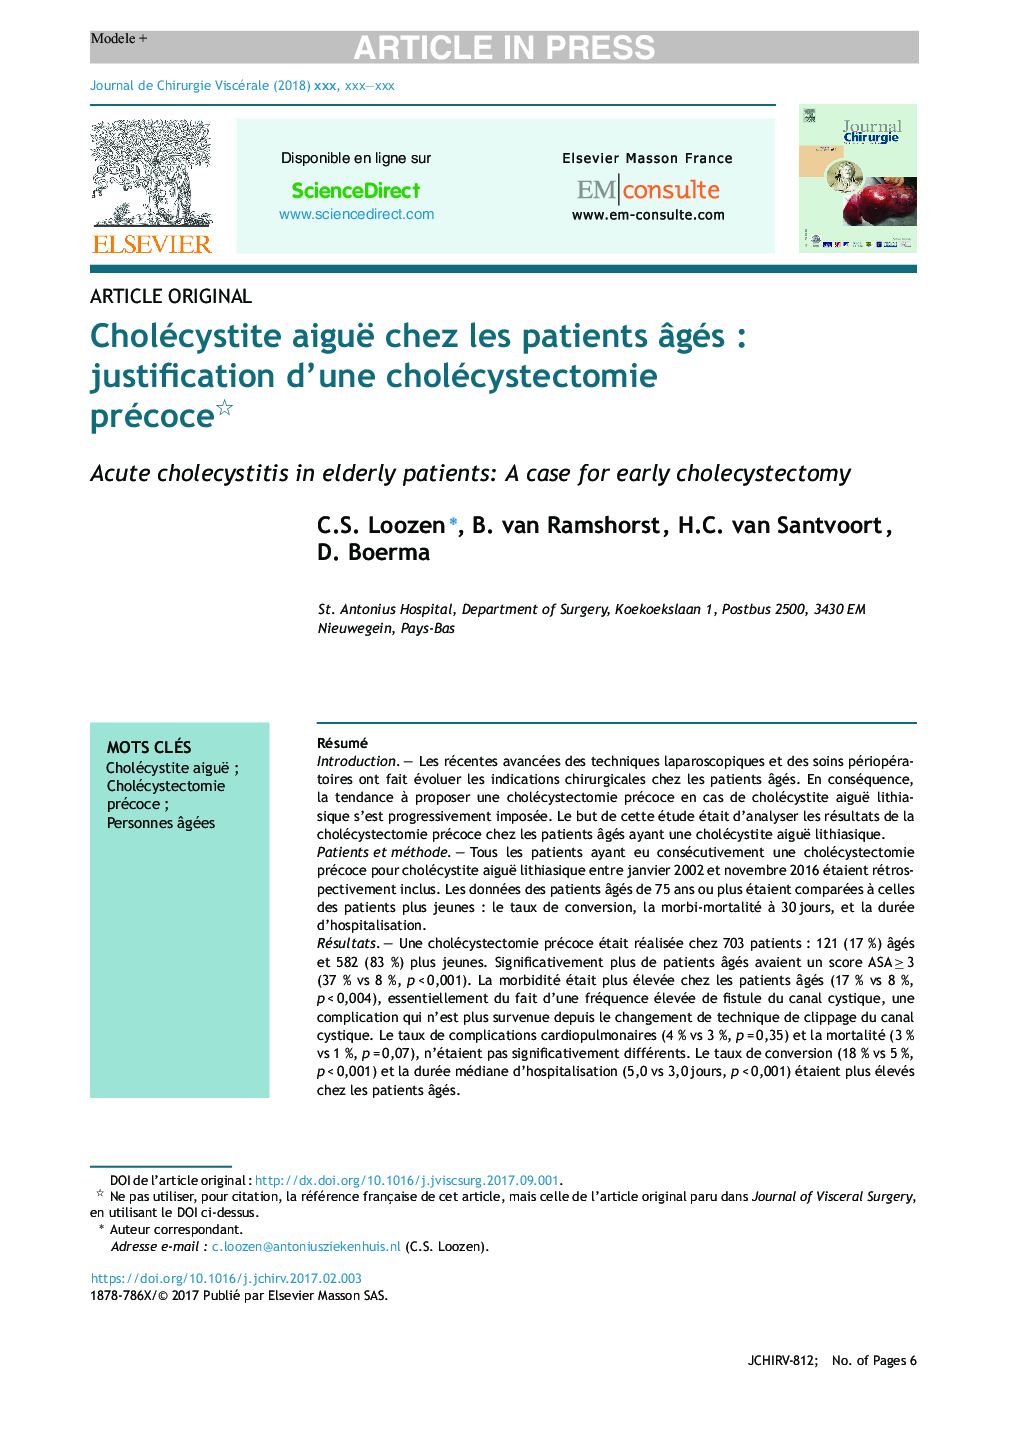 Cholécystite aiguë chez les patients Ã¢gésÂ : justification d'une cholécystectomie précoce